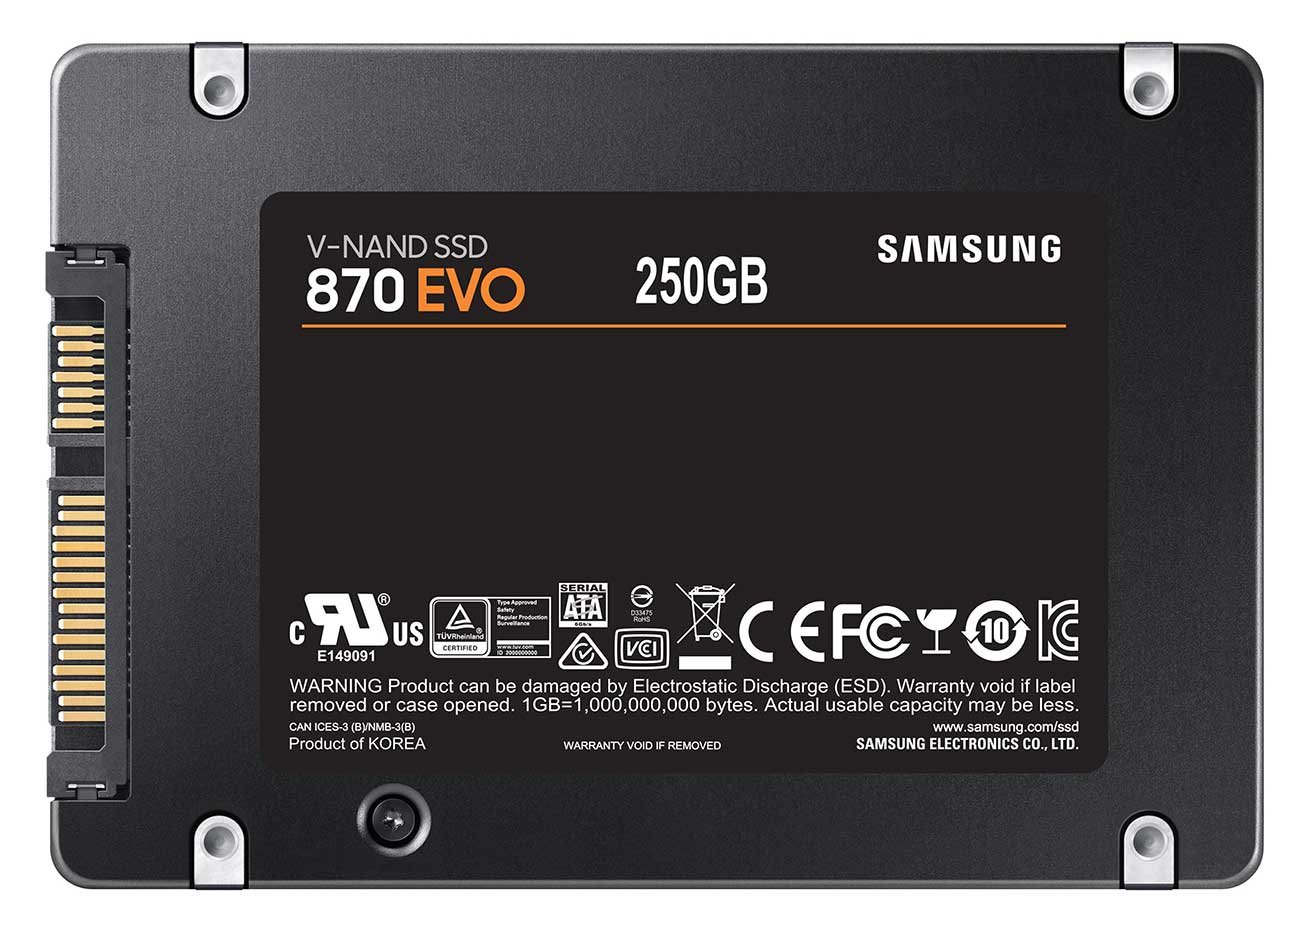 SAMSUNG 2.5 inch 250GB 870 EVO SATA III HDD Hard Drive MZ-77E250B/AM